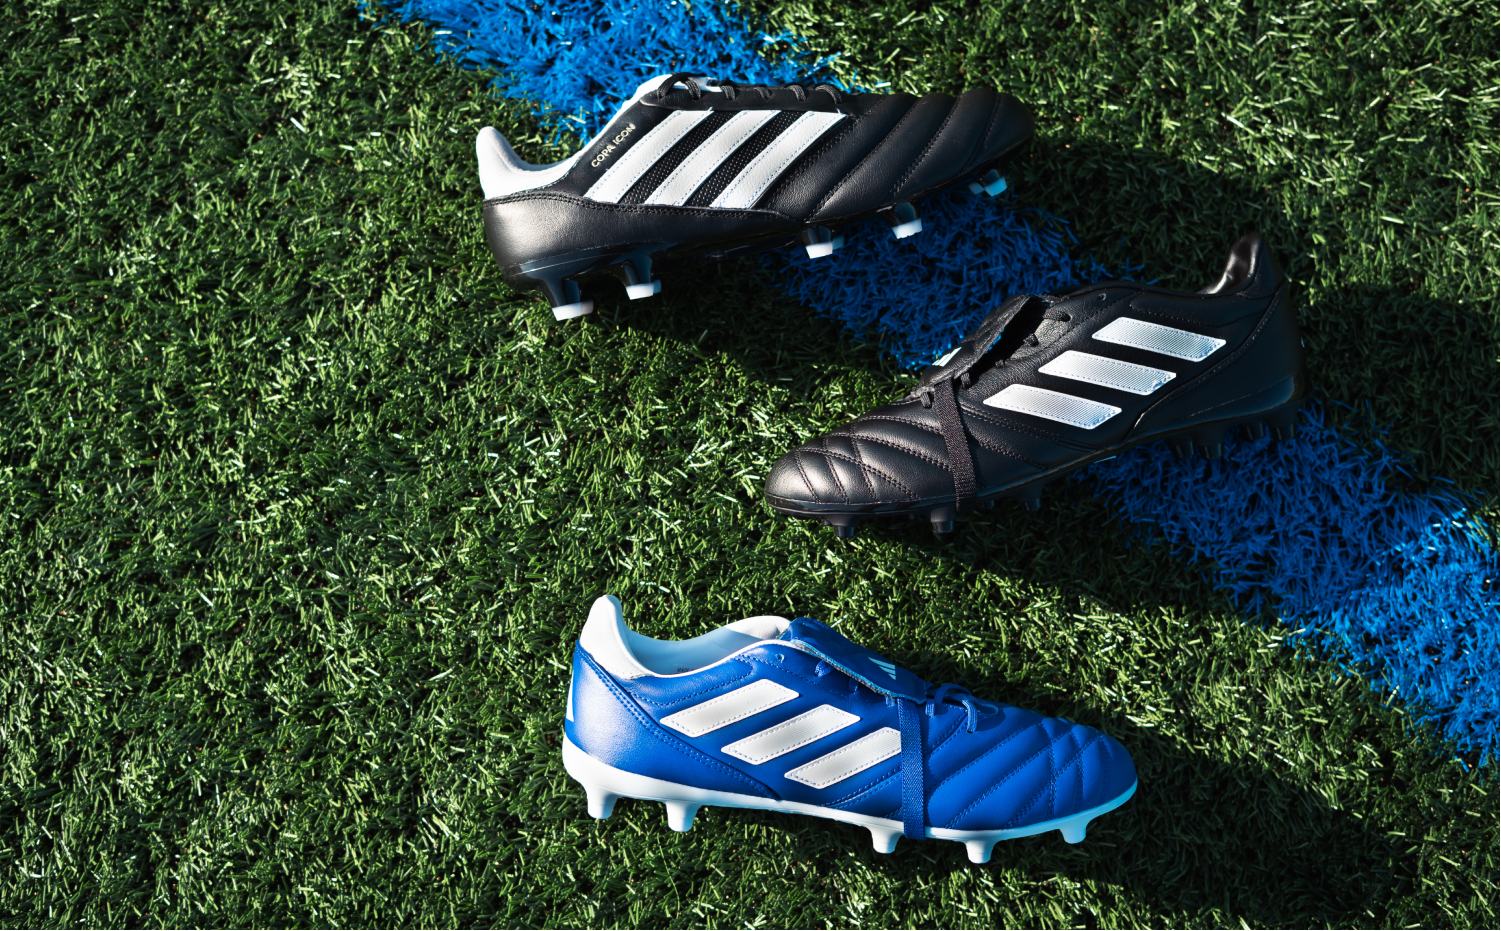 naar waar het écht om draait voetbal, is de nieuwe adidas COPA Icon & Gloro